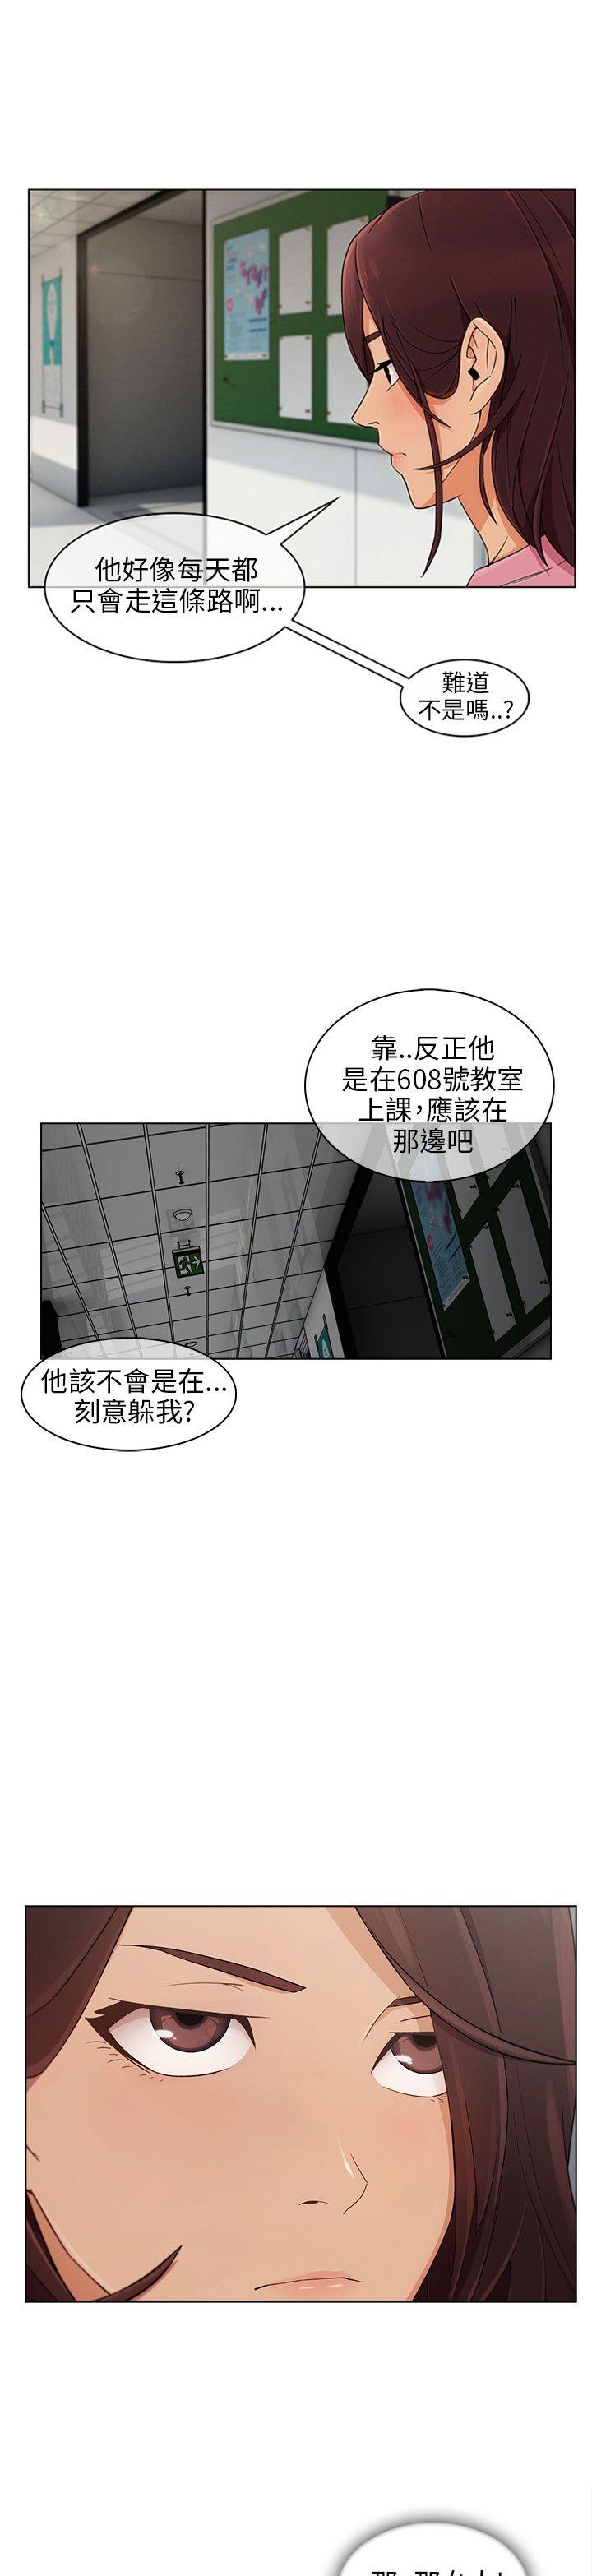 《湘亚:积极追求攻势》漫画 第11话